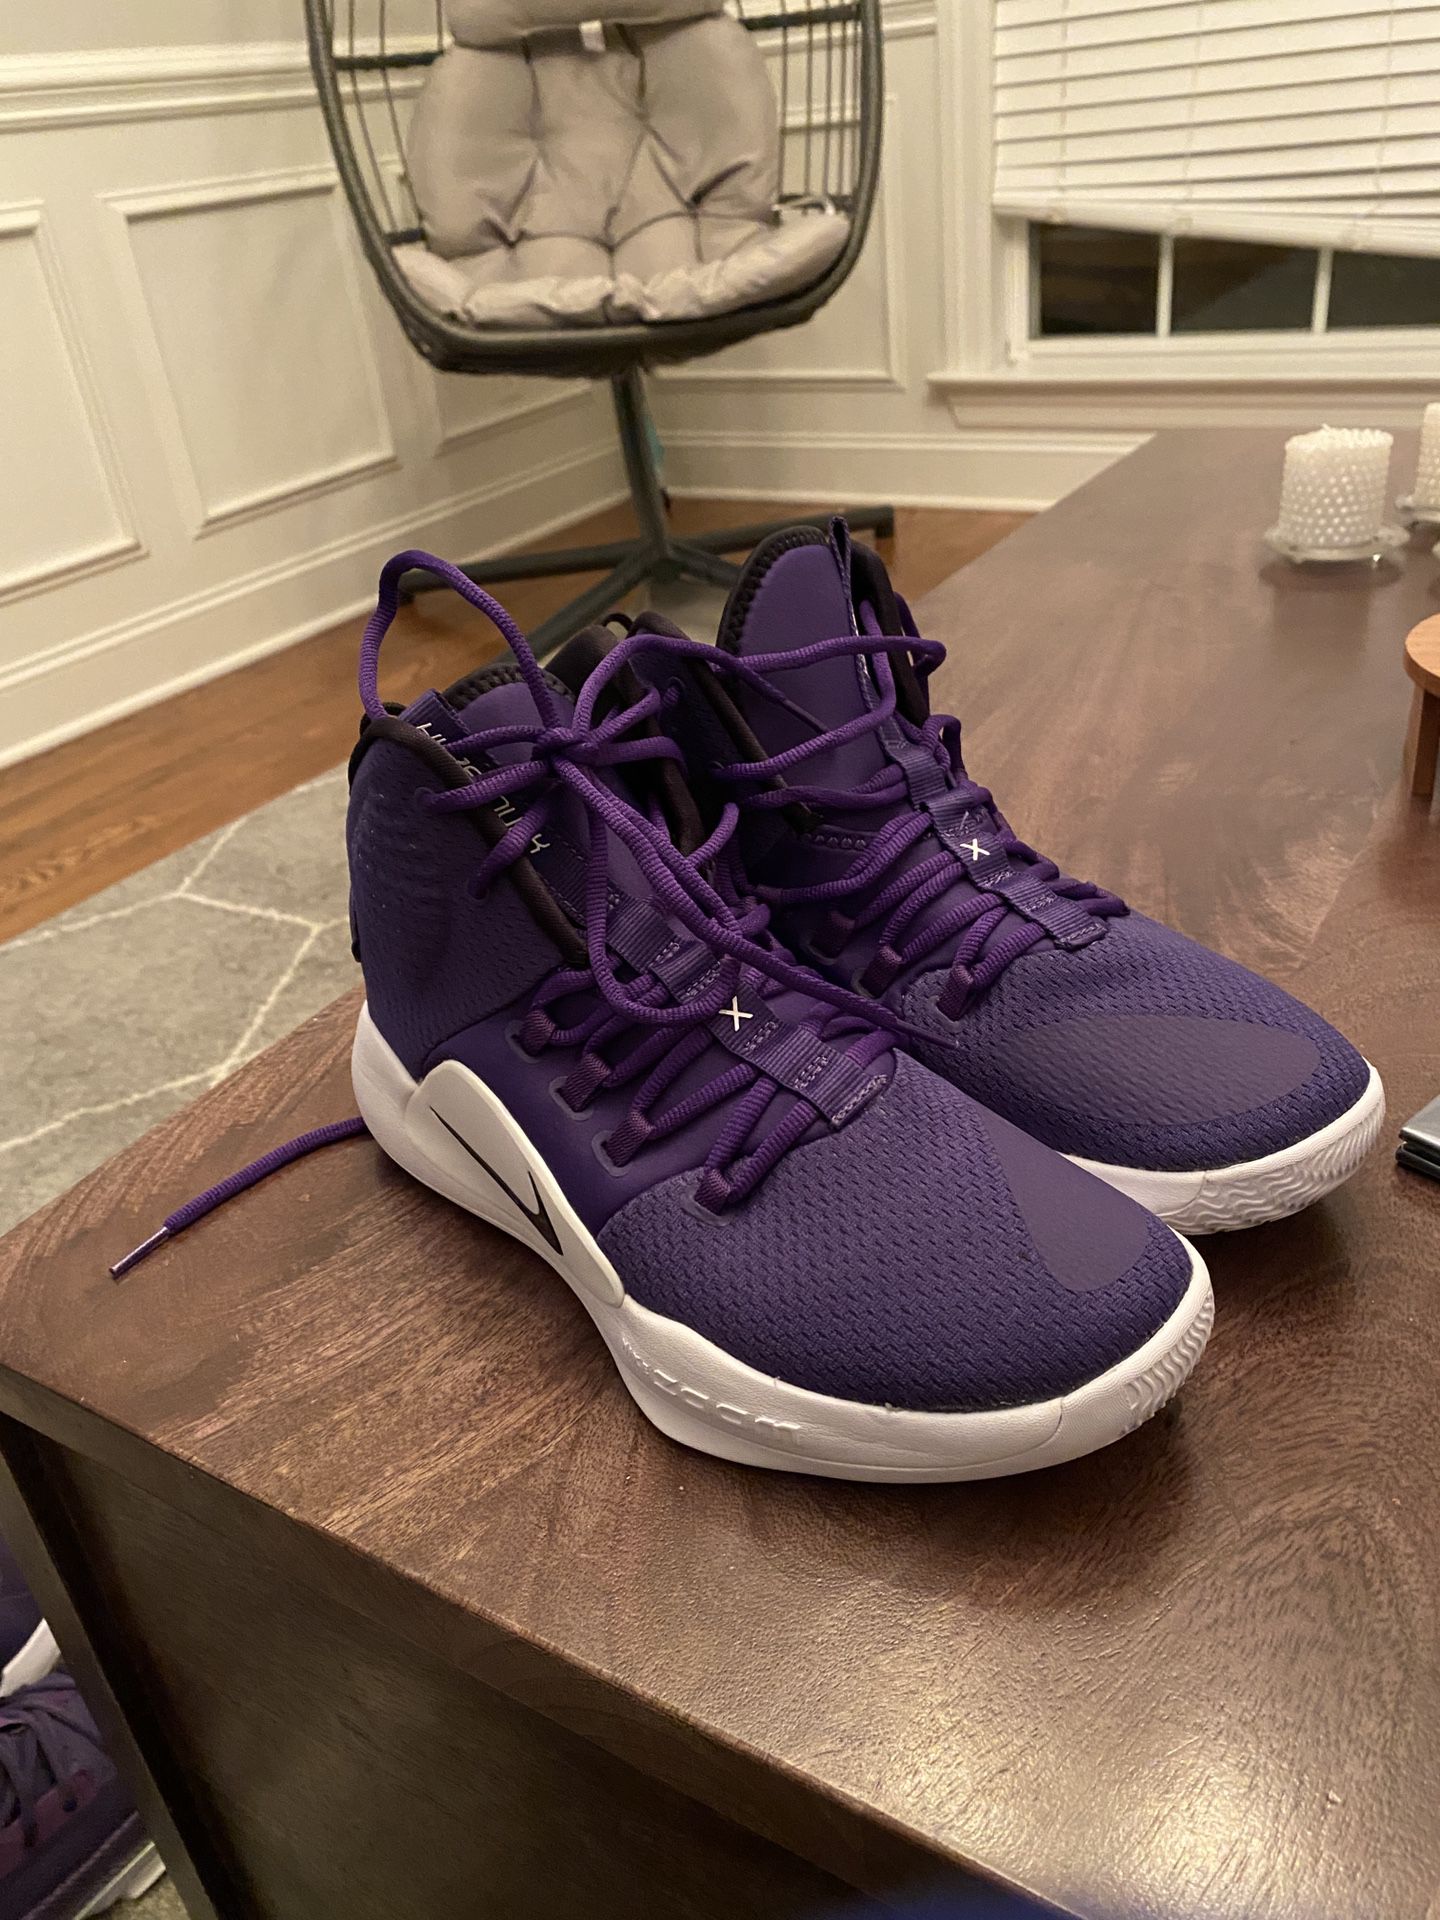 Nike Zoom Hyperdunk Size 8 Purple Mens/Boys